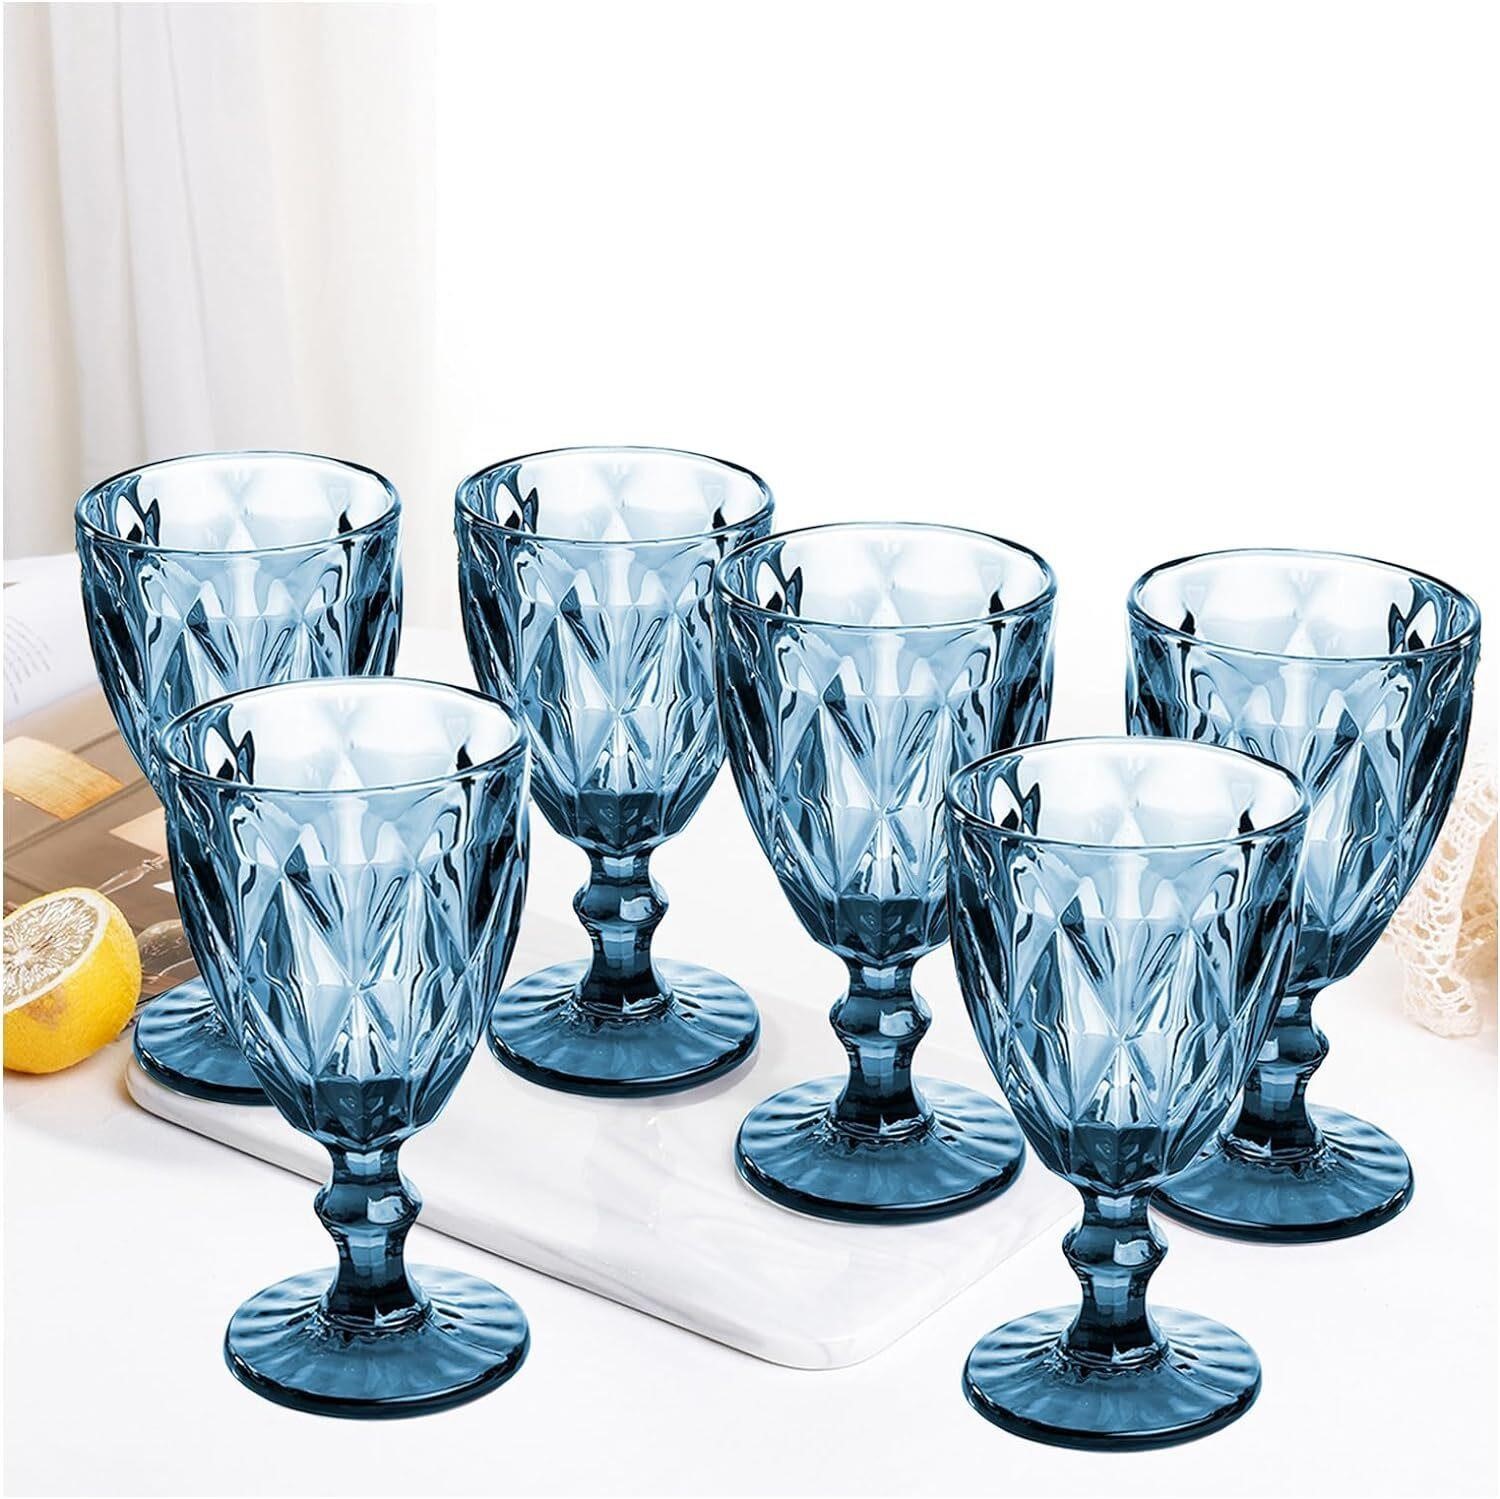 Vintage Wine Glasses  Set of 6  Plastic  Blue